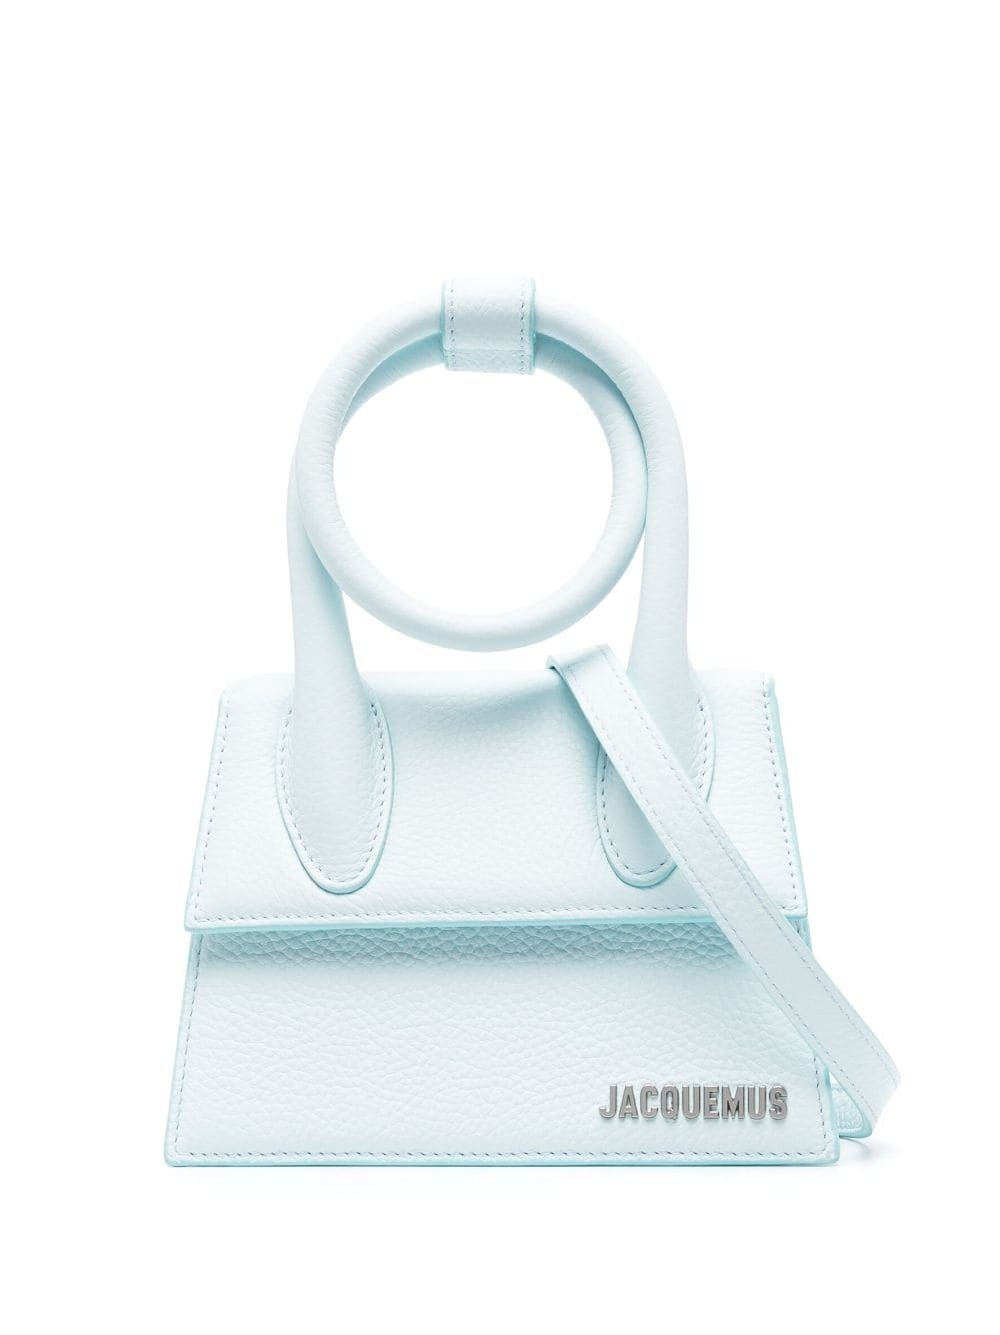 JACQUEMUS - Le Chiquito Noeud Handbag Jacquemus